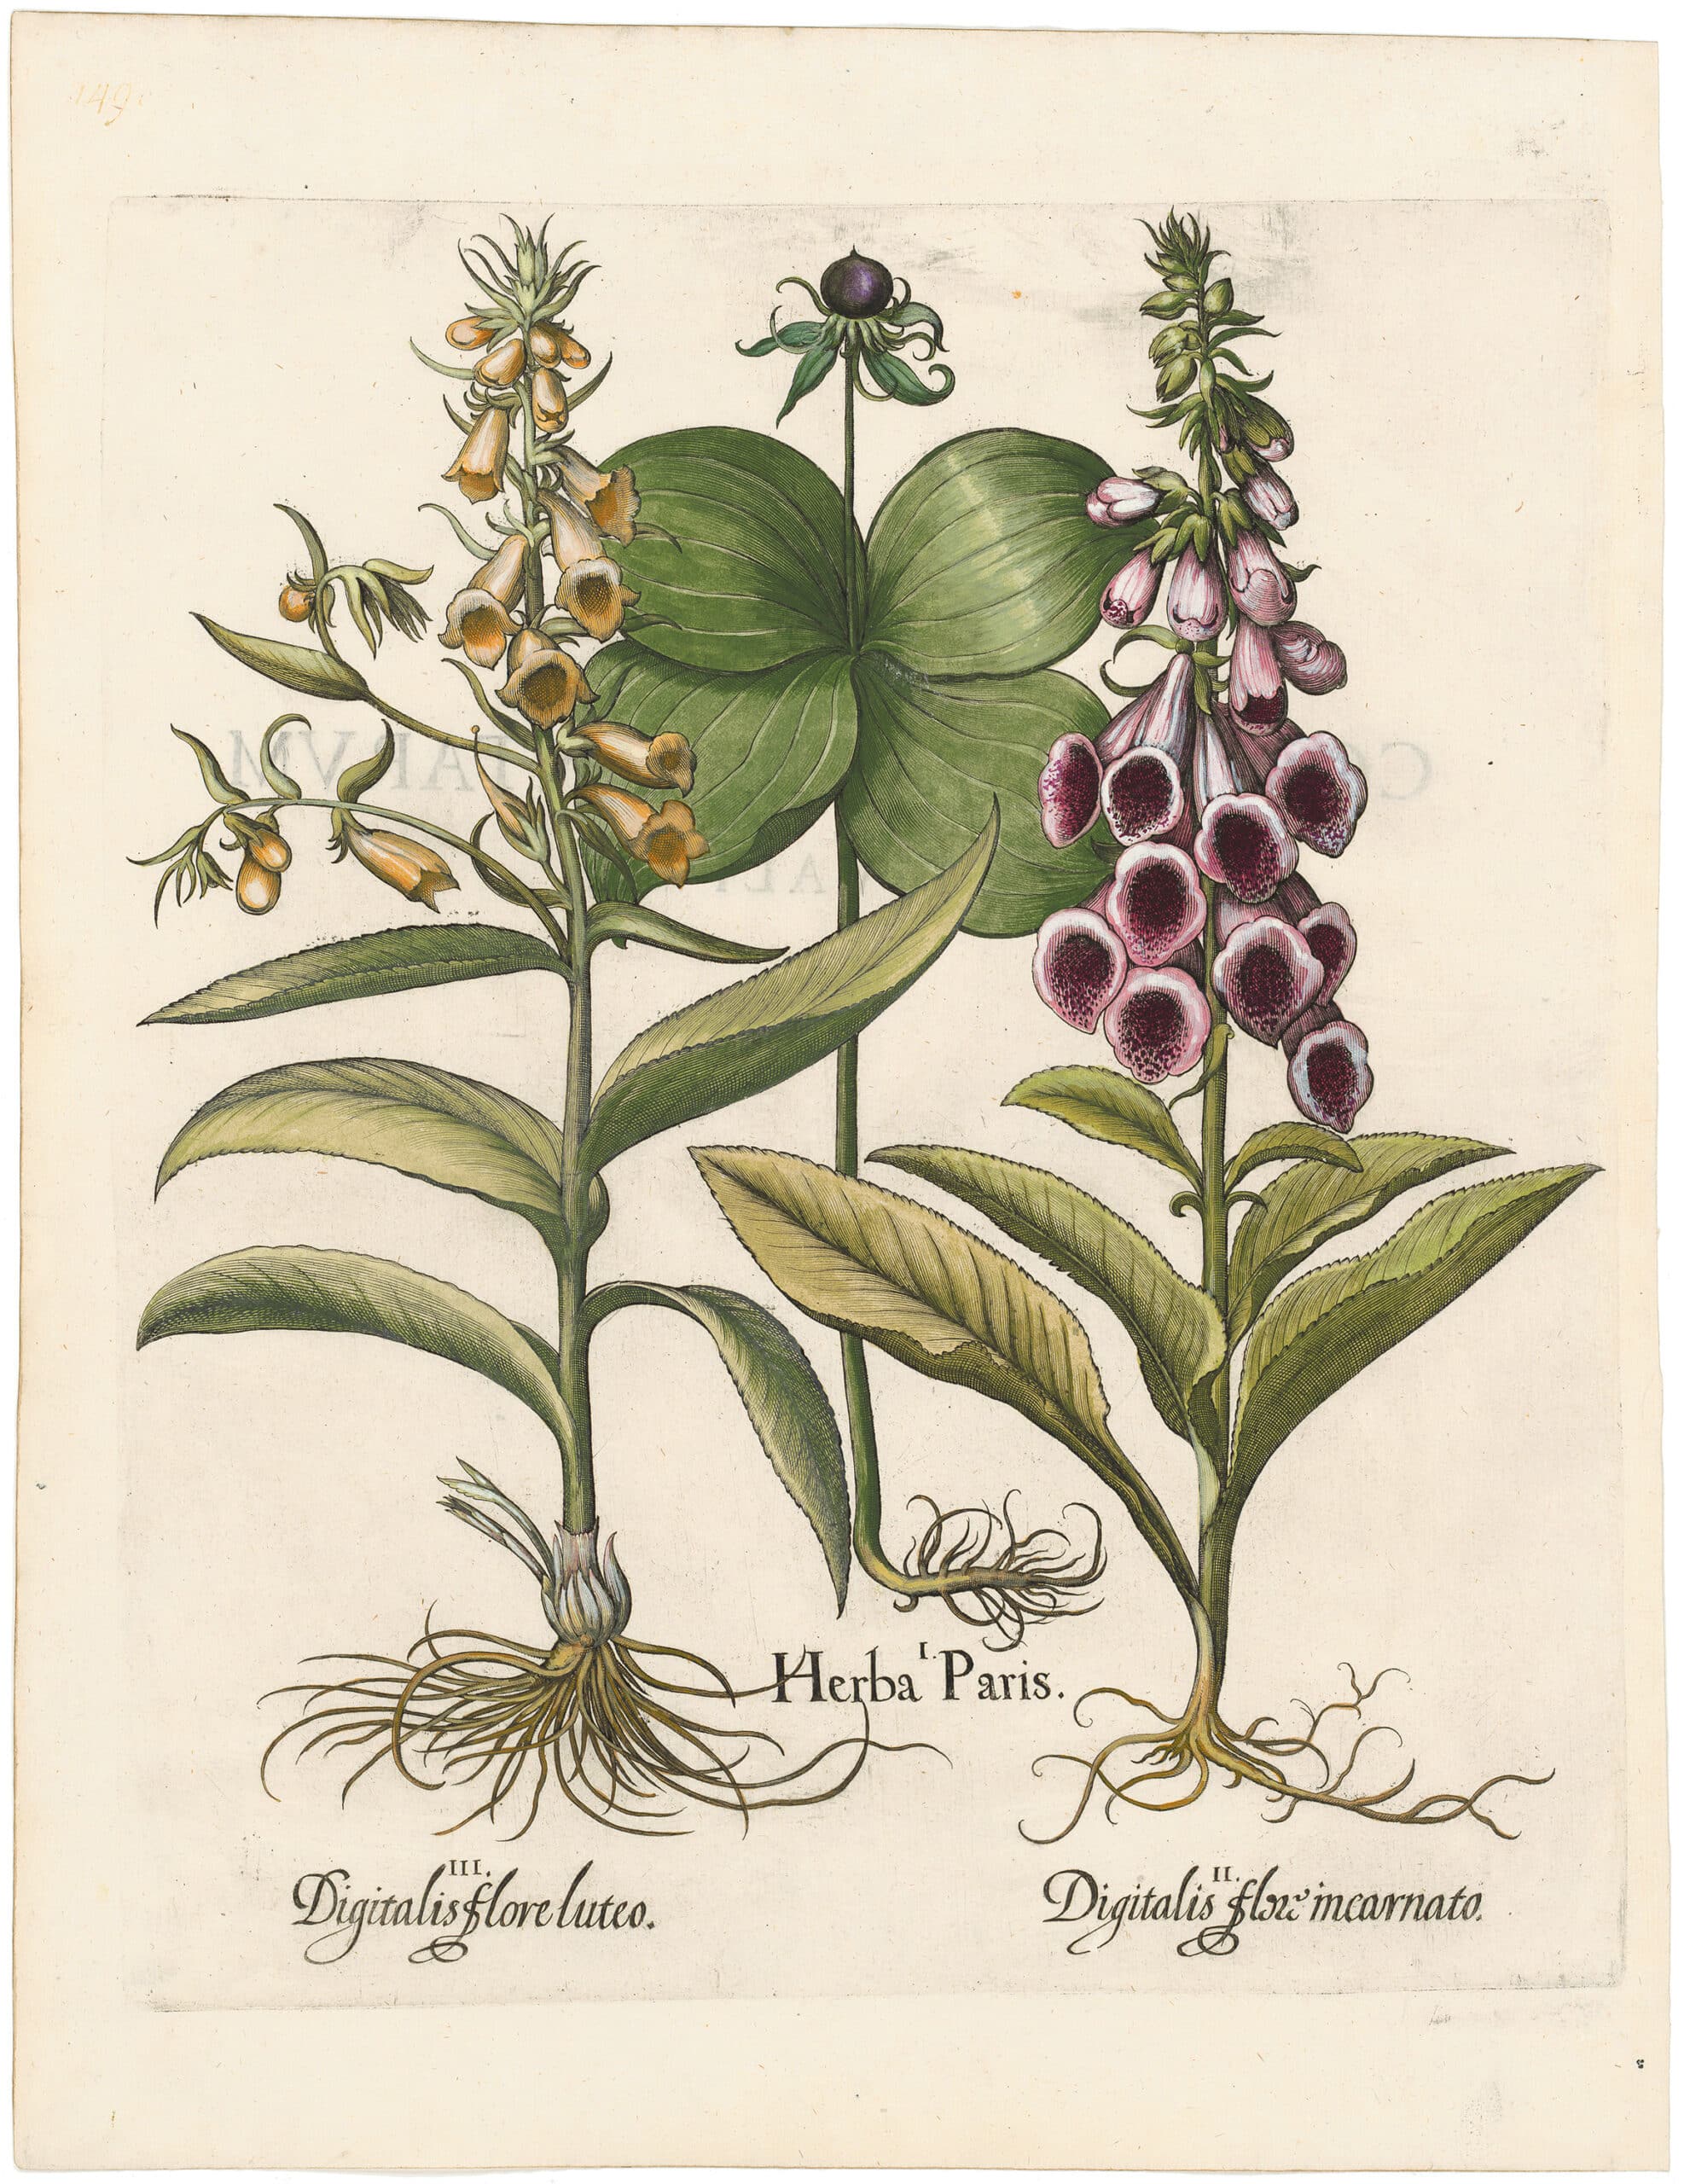 Besler Deluxe Ed. Pl. 149, Herb paris, Common pink foxglove, Yellow foxglove